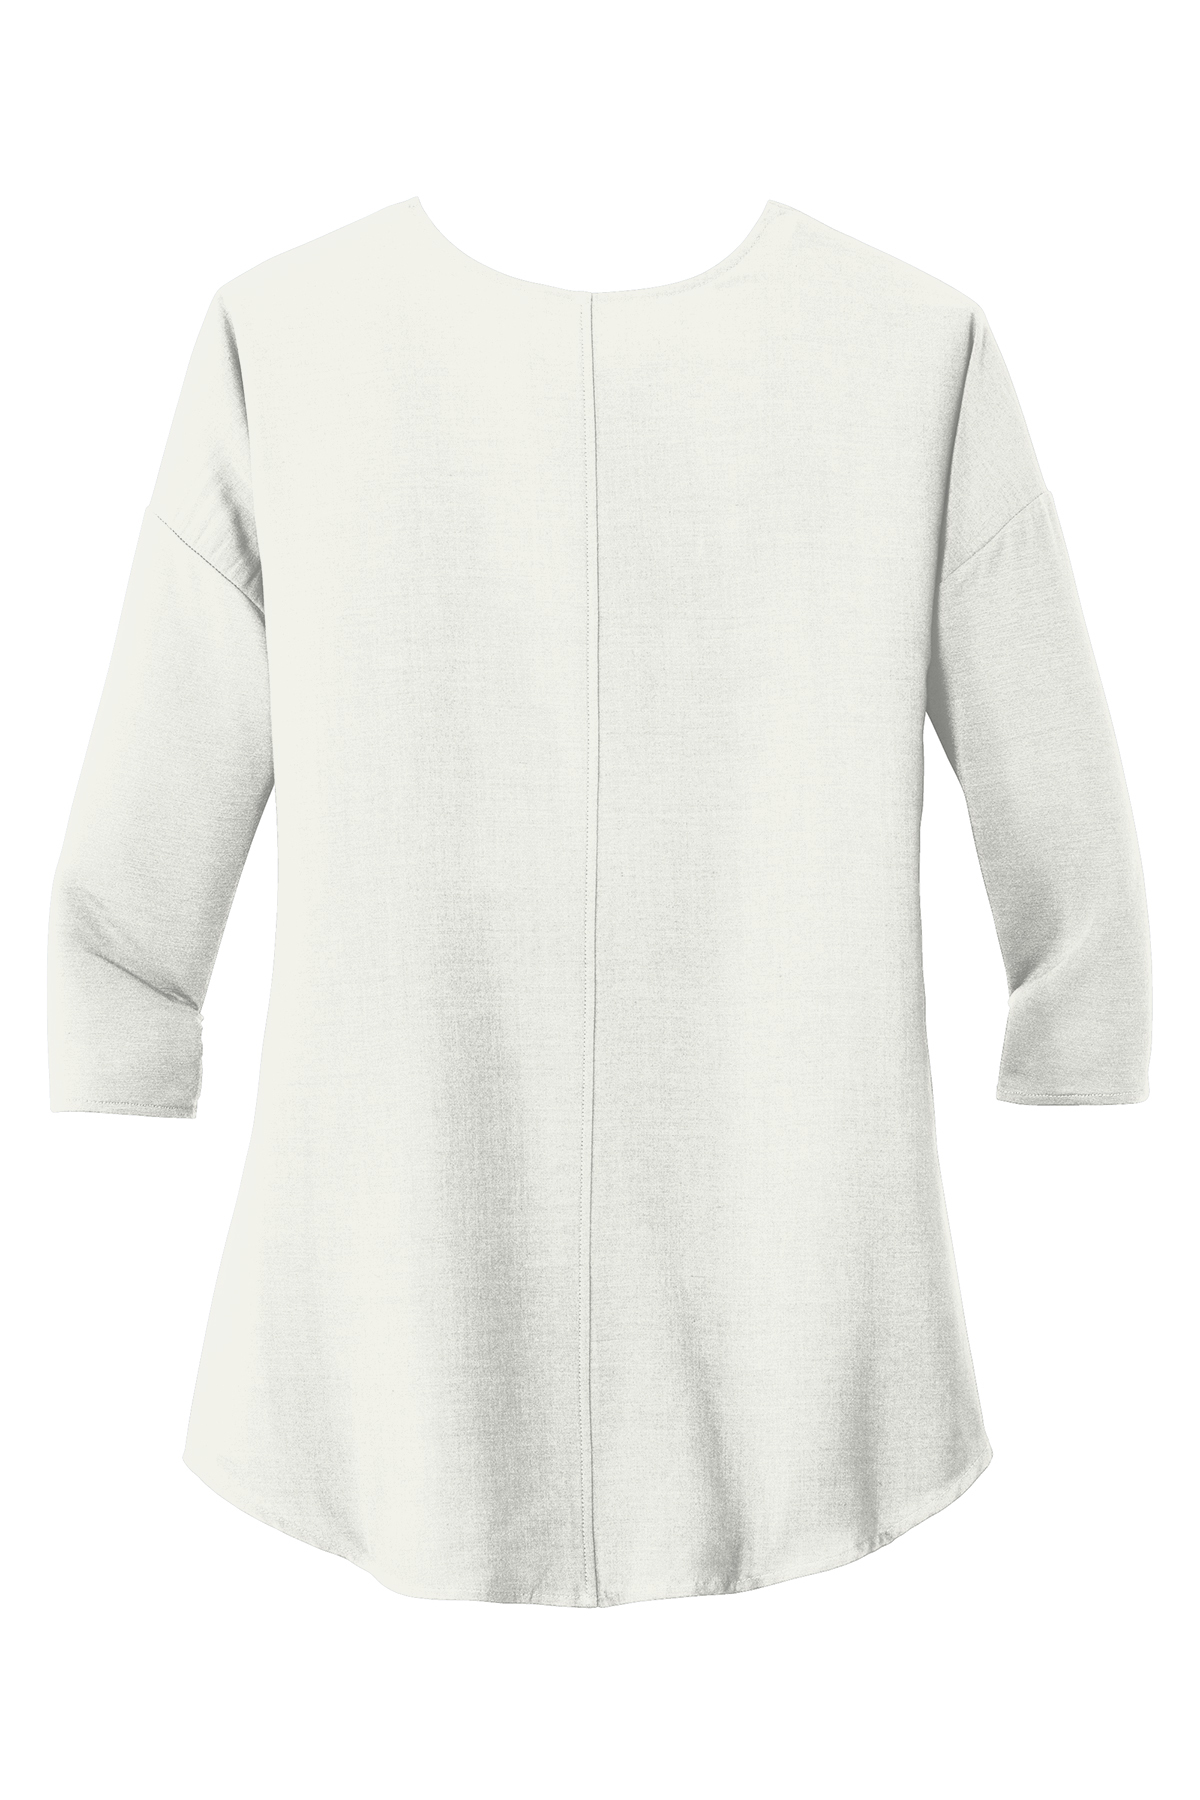 Port Authority ® Ladies Concept 3/4-Sleeve Soft Split Neck Top